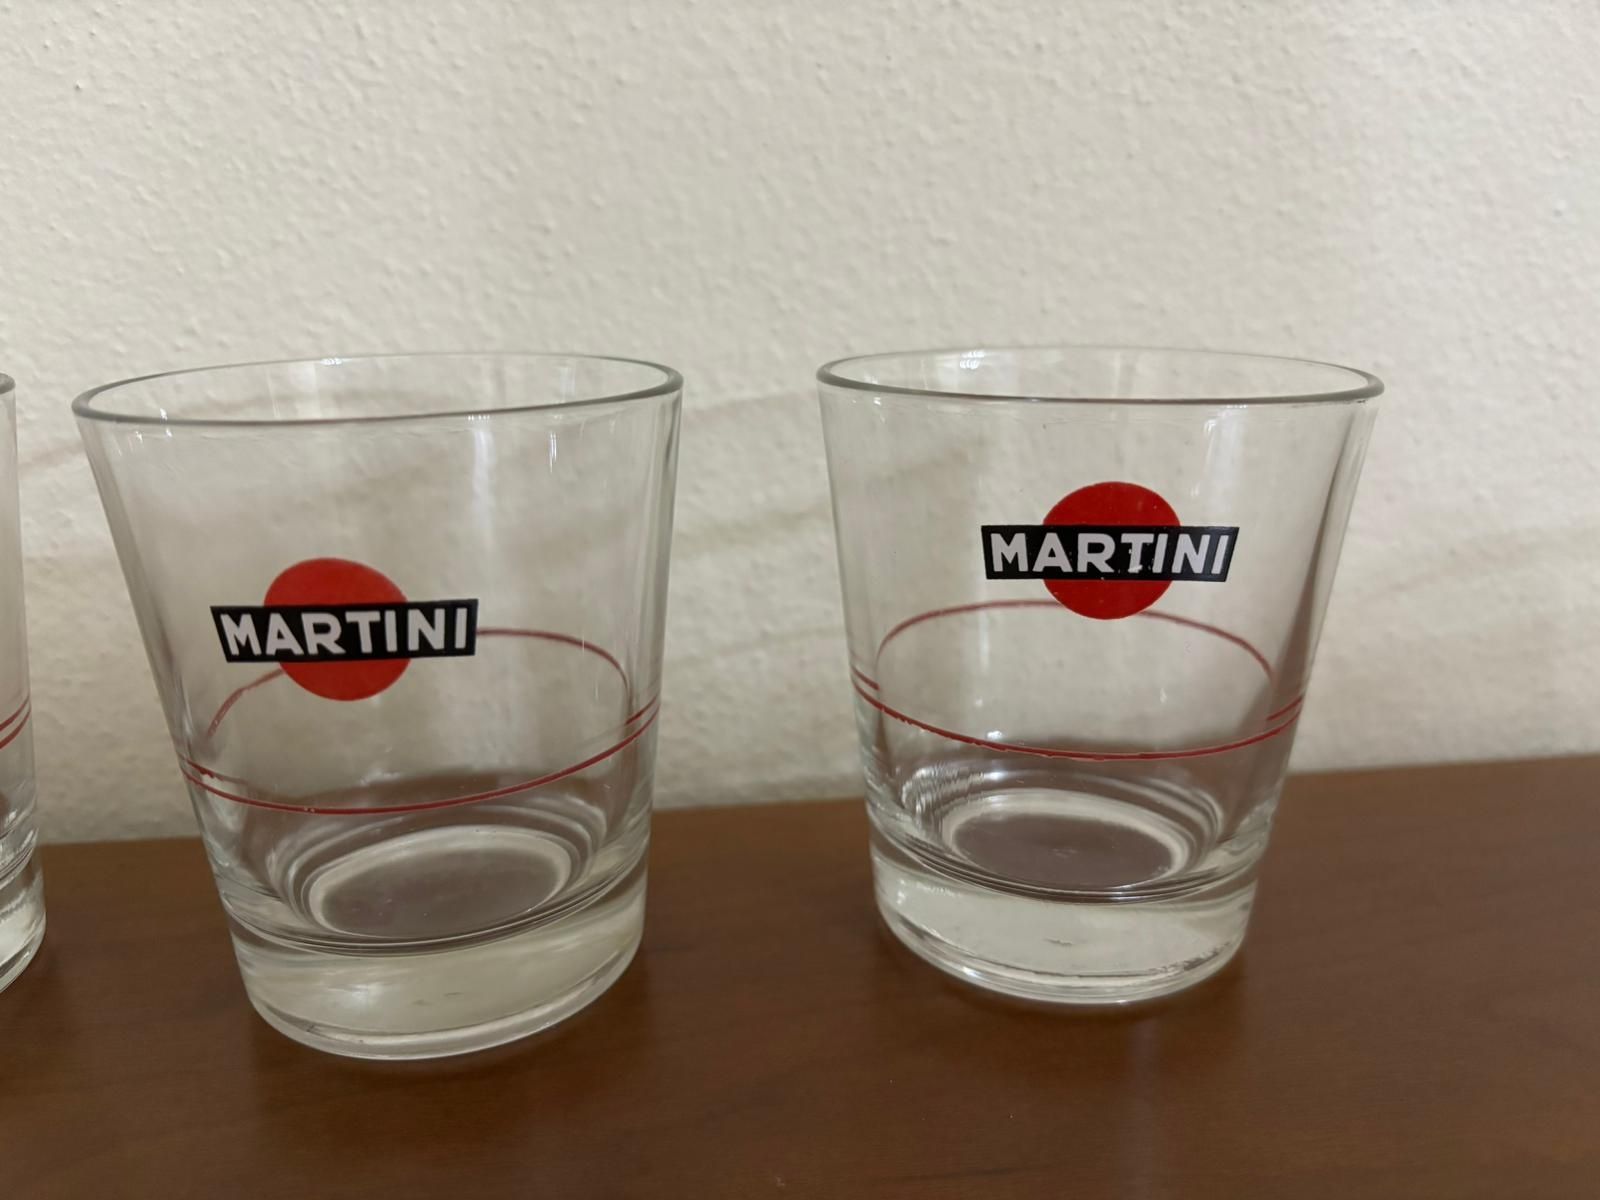 Copos colecionáveis - Martini e Cinzano (anos 80)